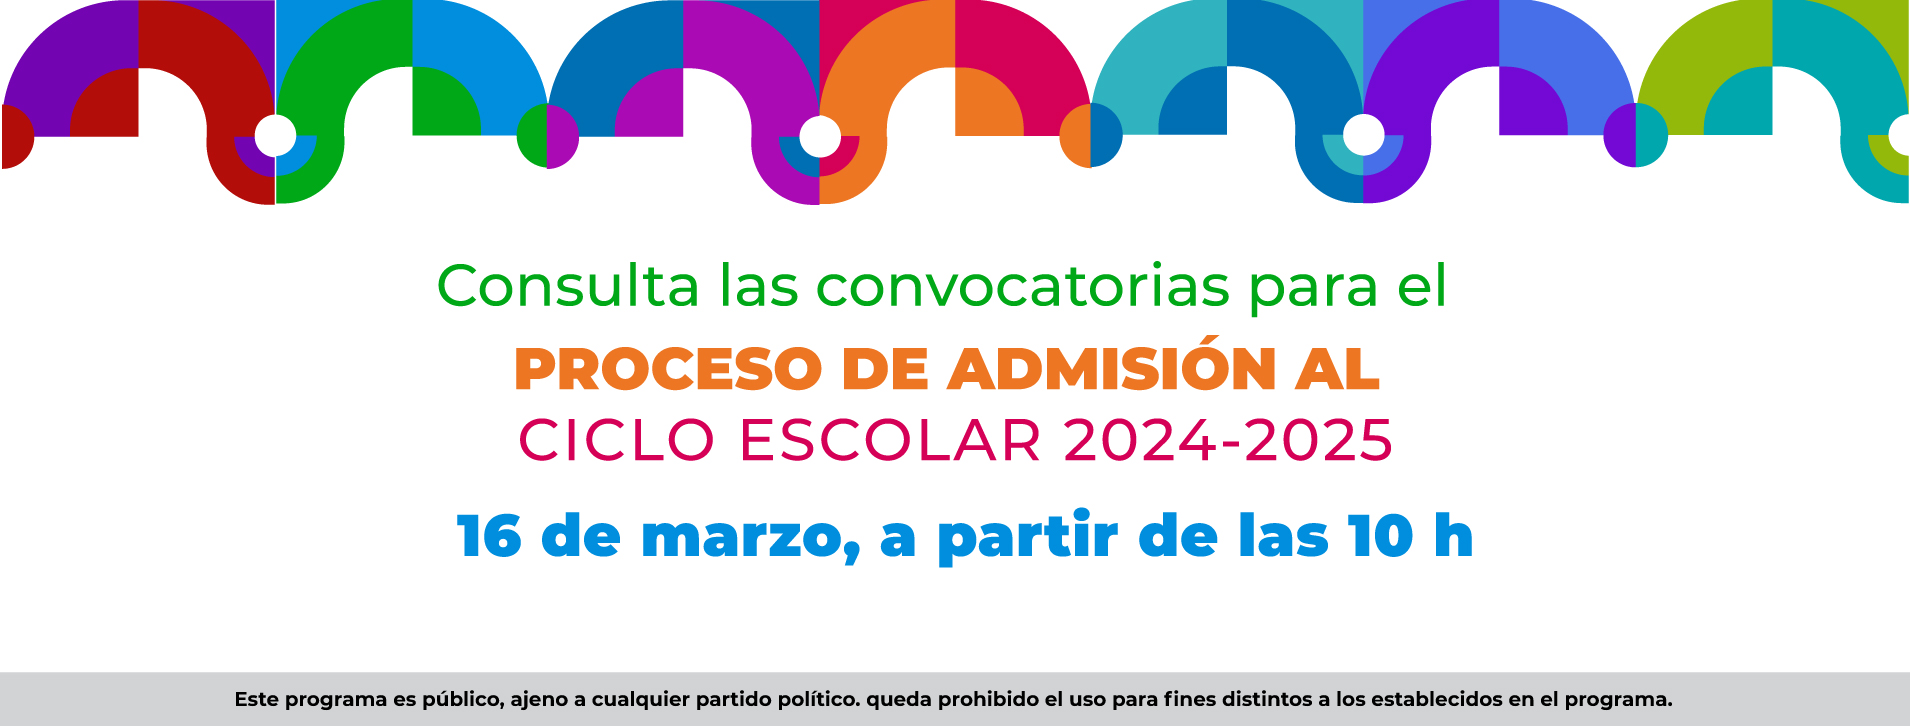 Proceso de Admisión al ciclo escolar 2024-2025 de las escuelas del Instituto Nacional de Bellas Artes y Literatura